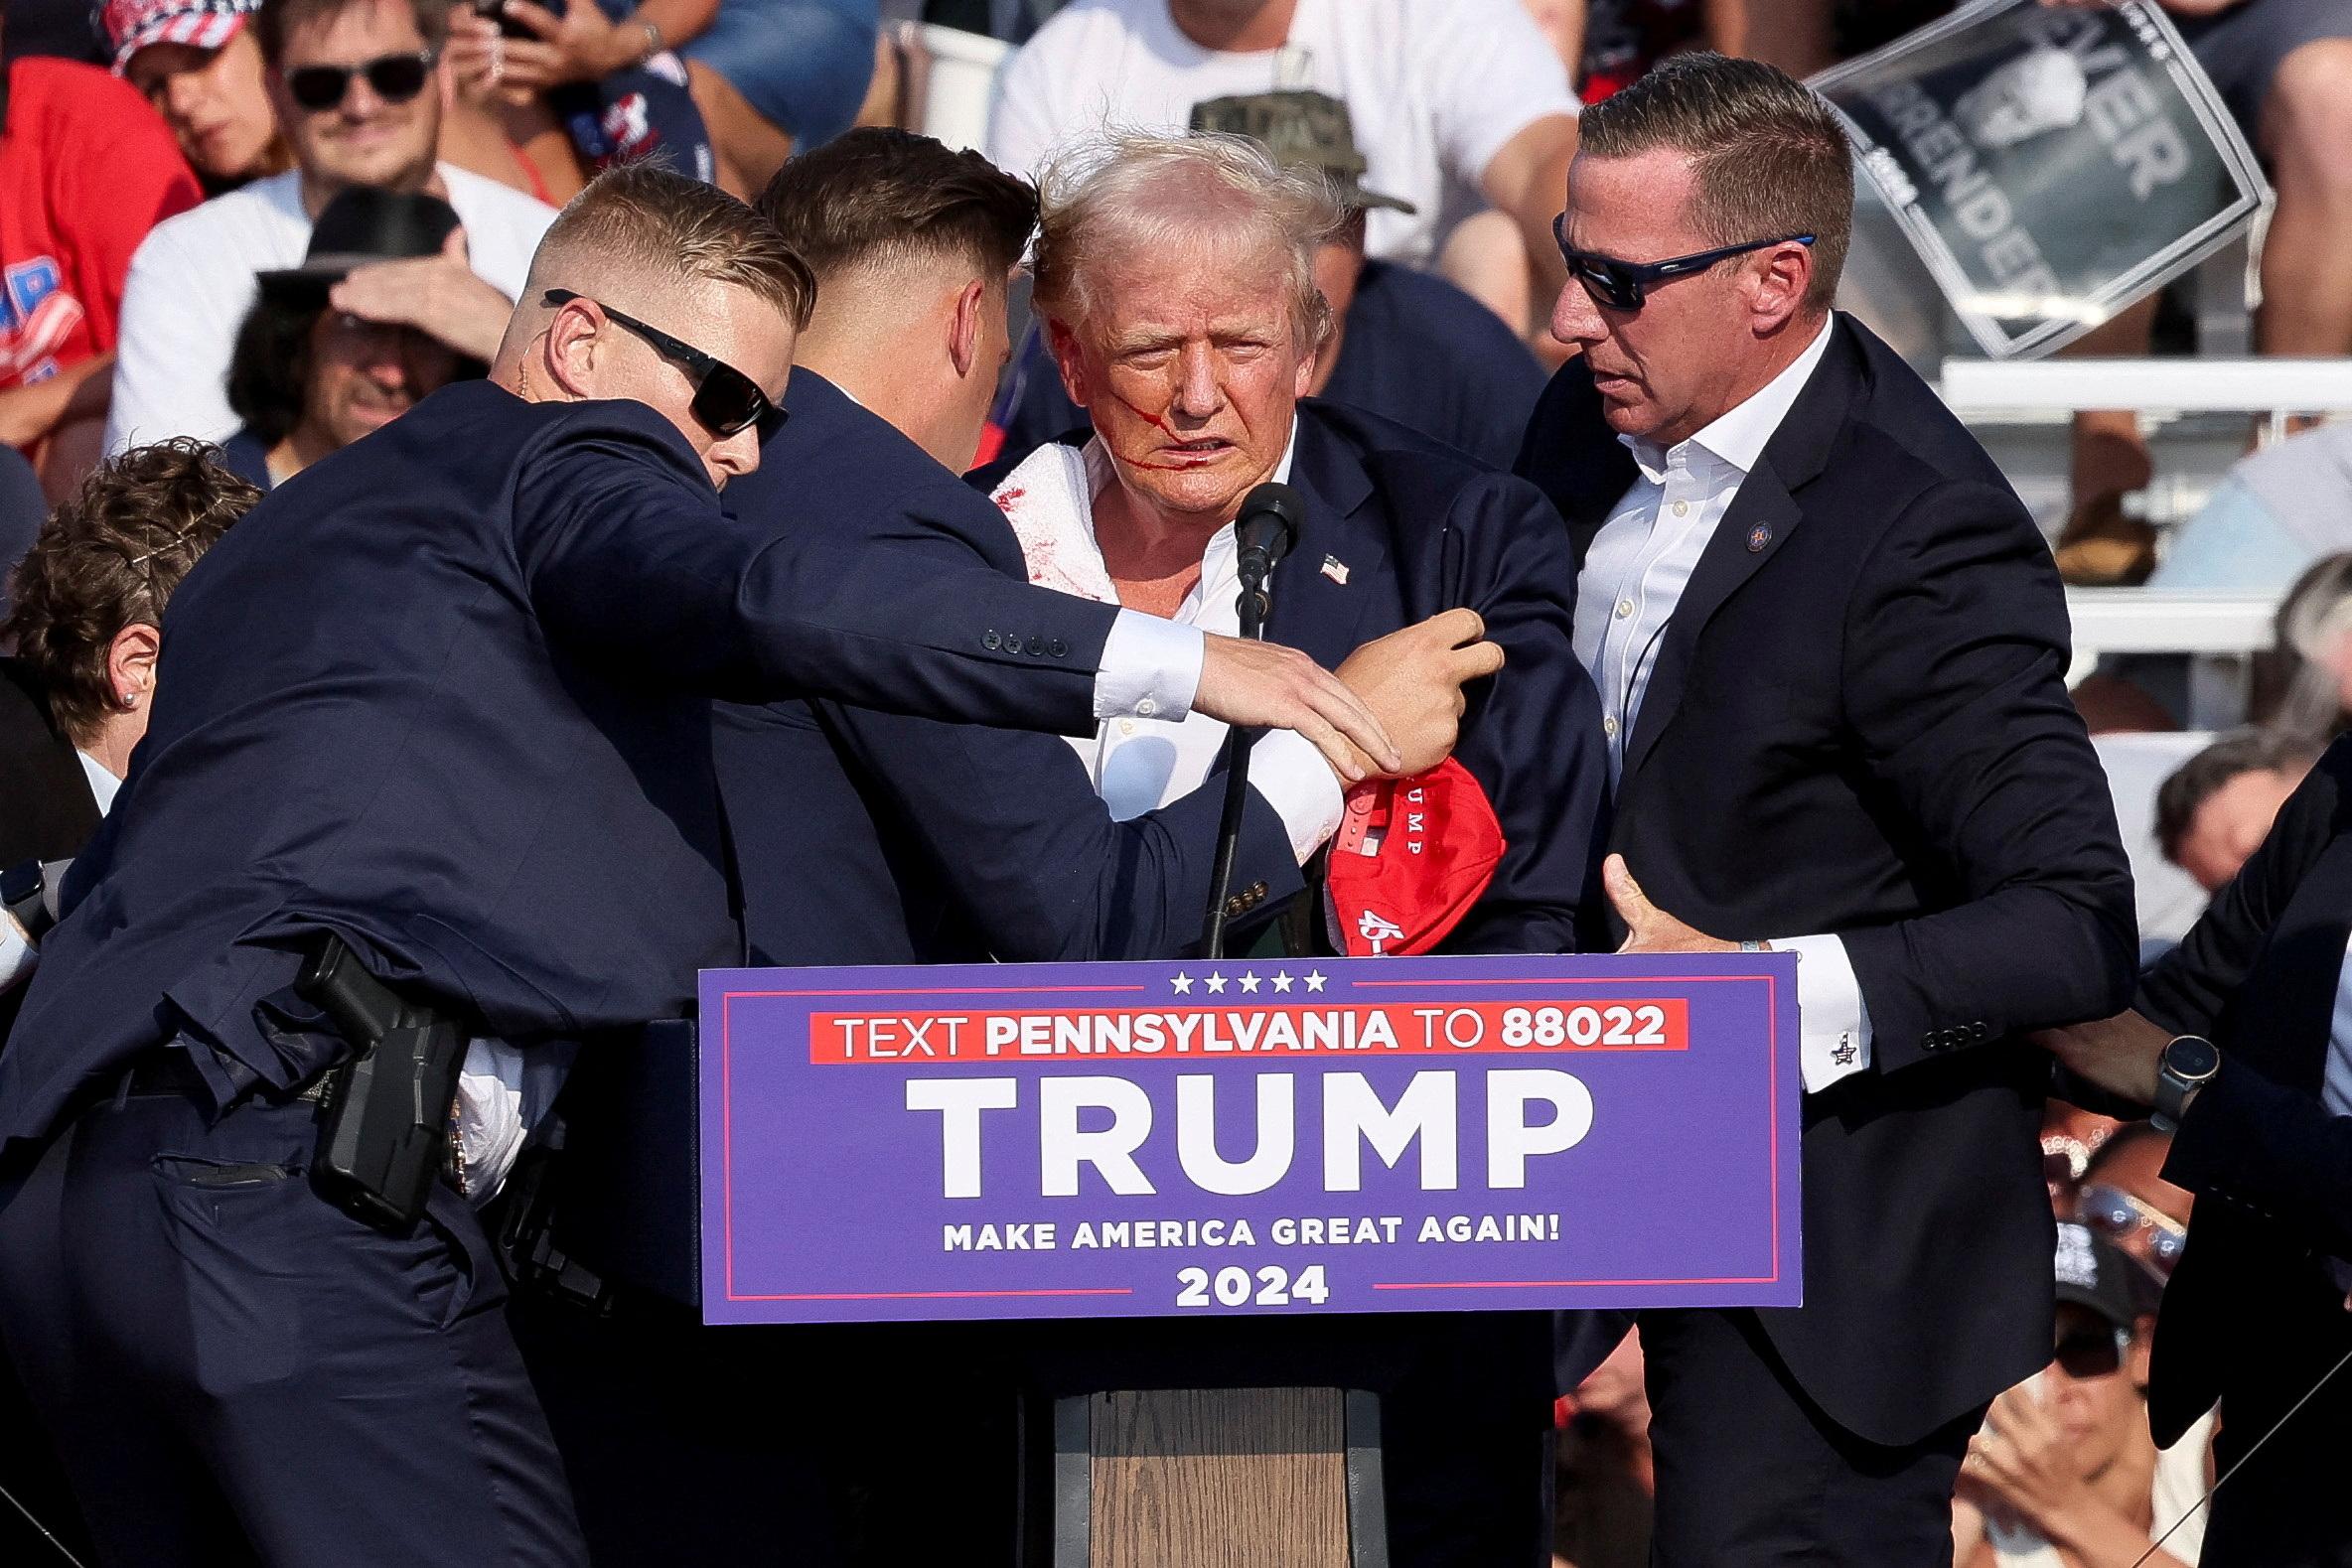 El expresidente Trump fue visto rodeado por agentes del Servicio Secreto luego de que Crooks disparara en el escenario.